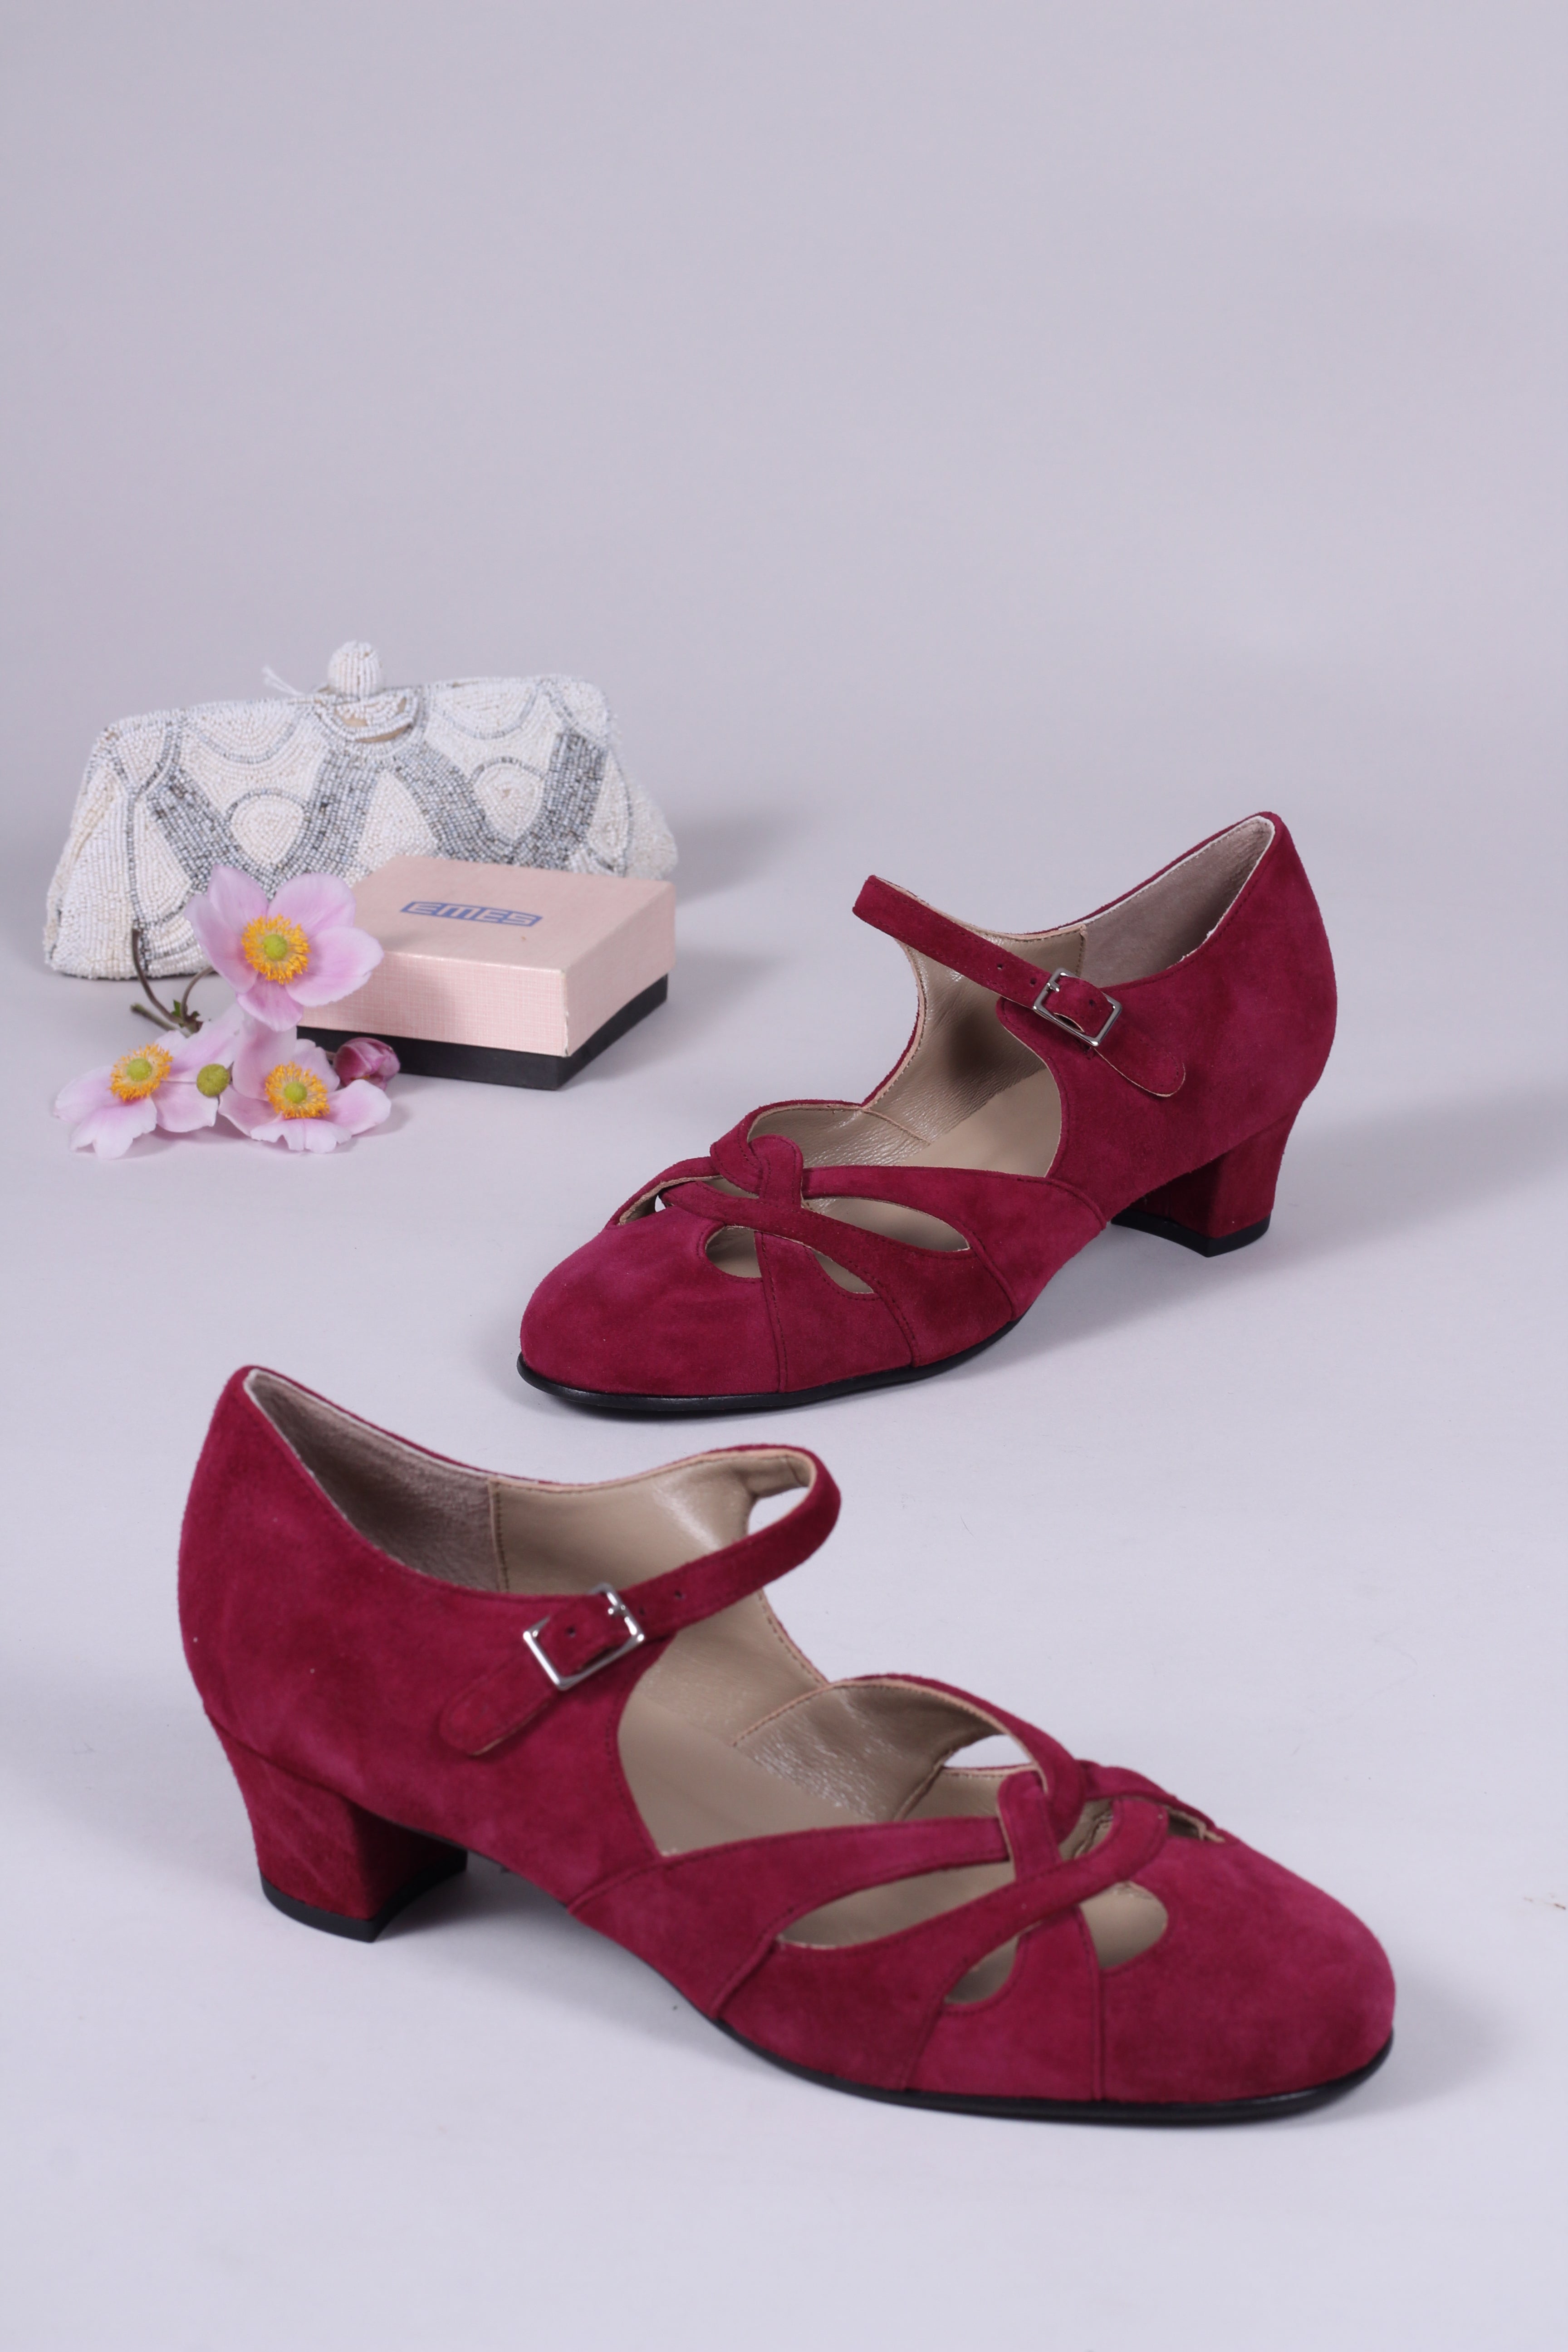 1930'er / 1940'er vintage style sandaler i ruskind - bordeaux rød Id – memery